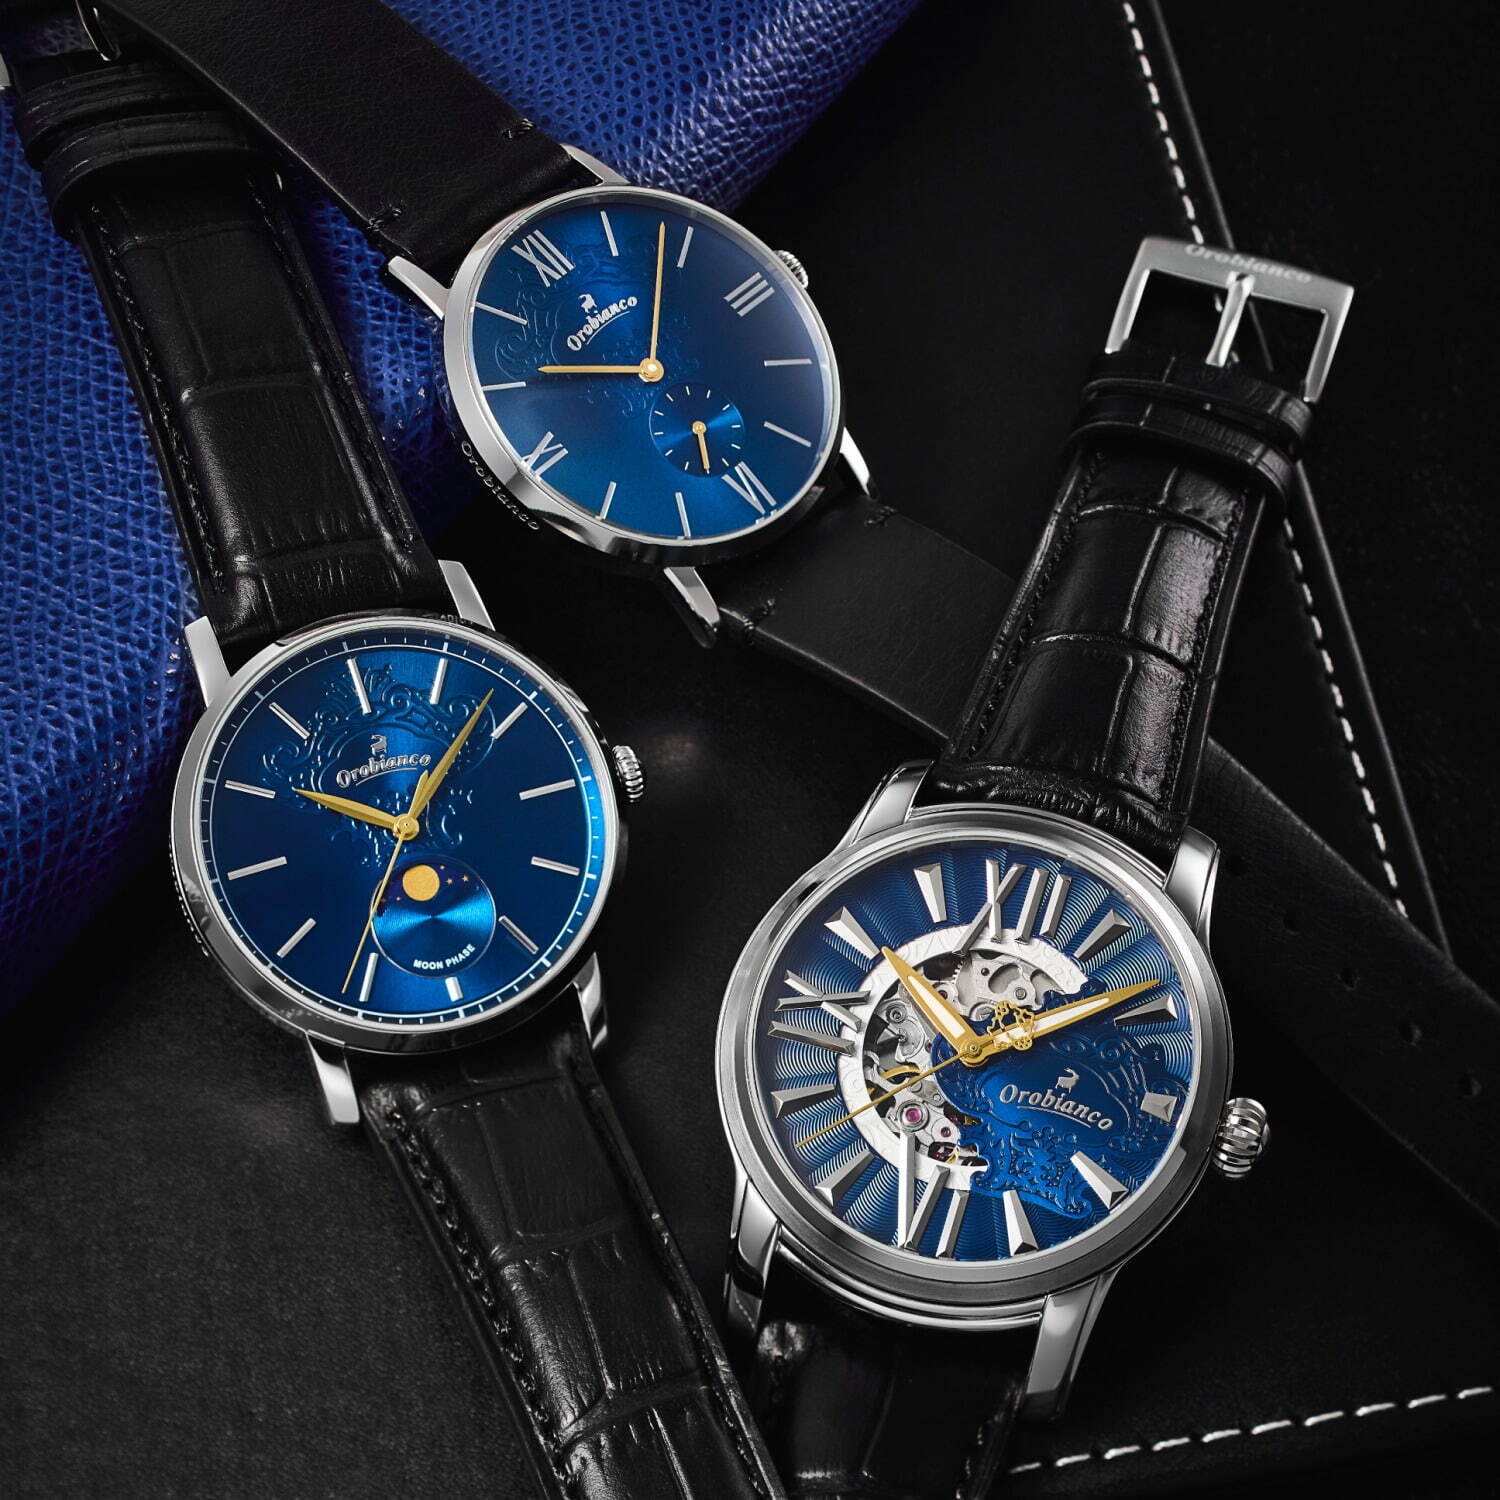 オロビアンコ25周年腕時計は夜空のような青色文字盤×漆黒ベルト - ザ ...